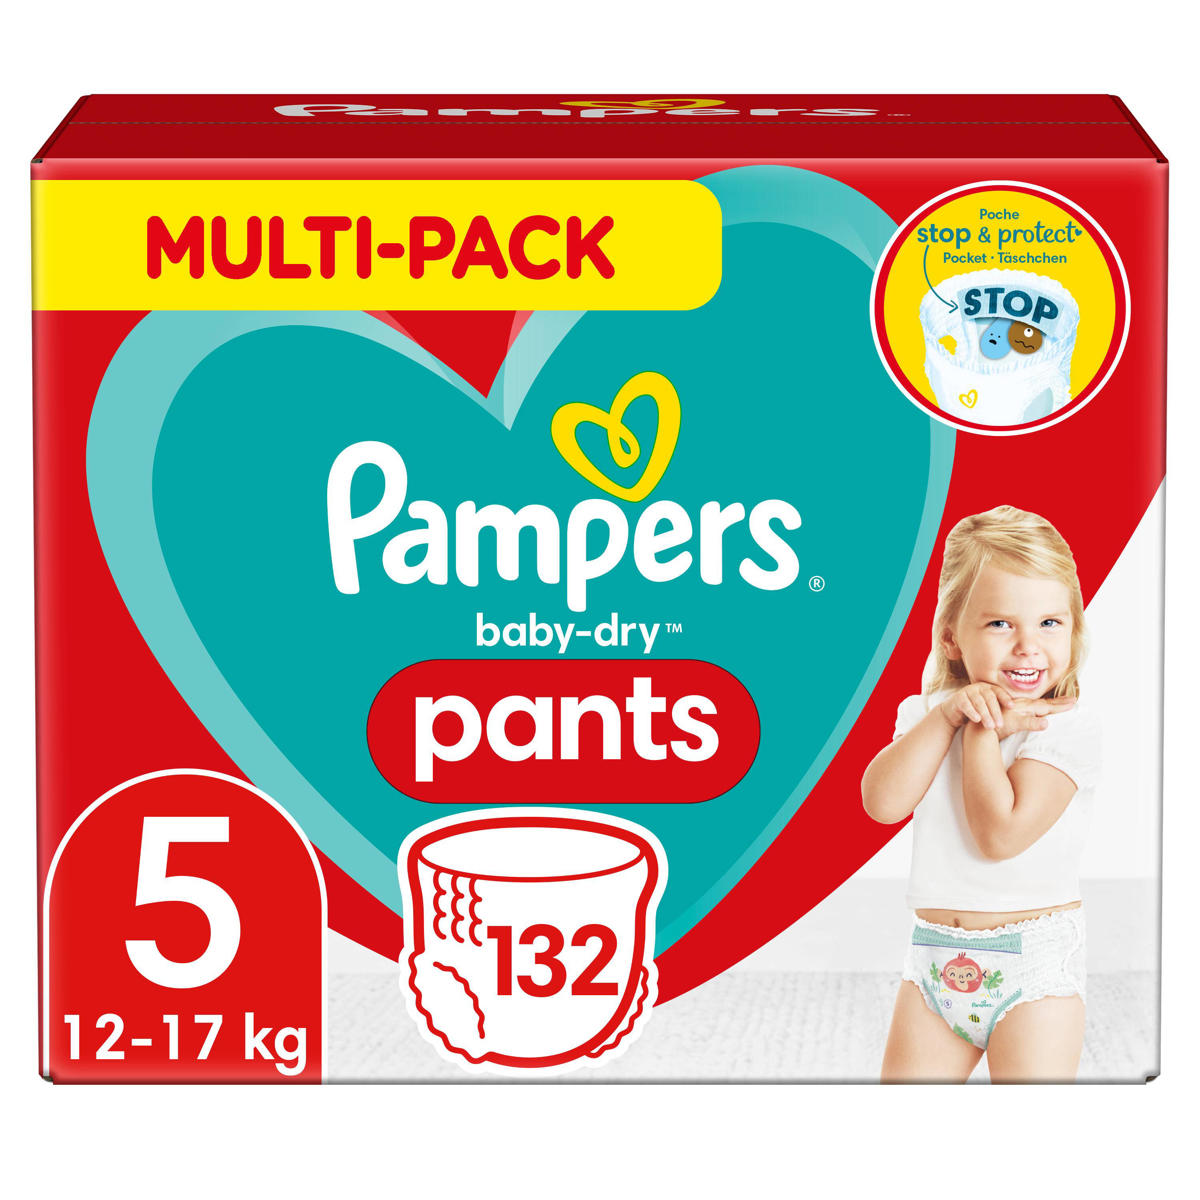 vrije tijd Veroveraar Tahiti Pampers Baby-Dry Pants Luierbroekjes - Maat 5 (12-17 kg) - 132 stuks -  Multi-Pack | wehkamp